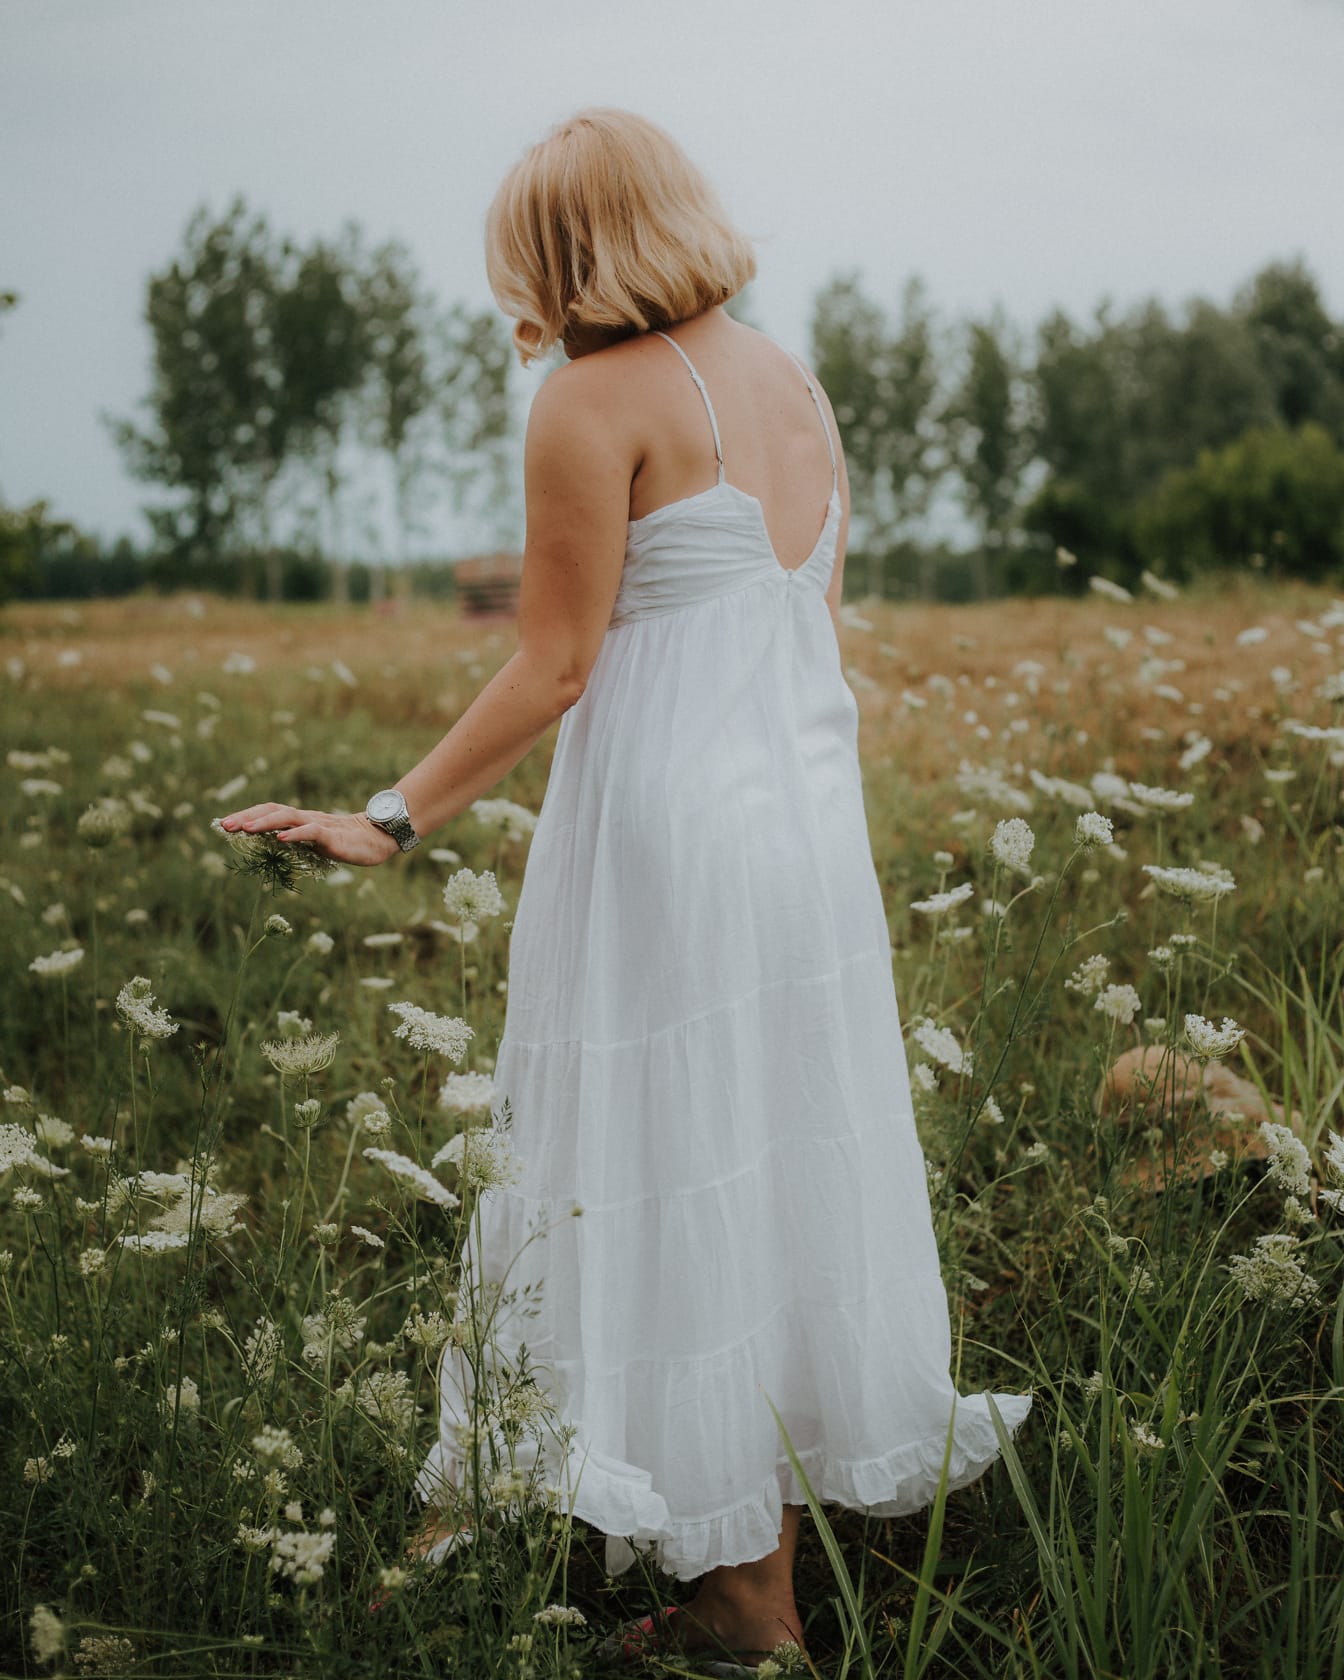 흰 드레스를 입고 초원에 있는 금발 여자